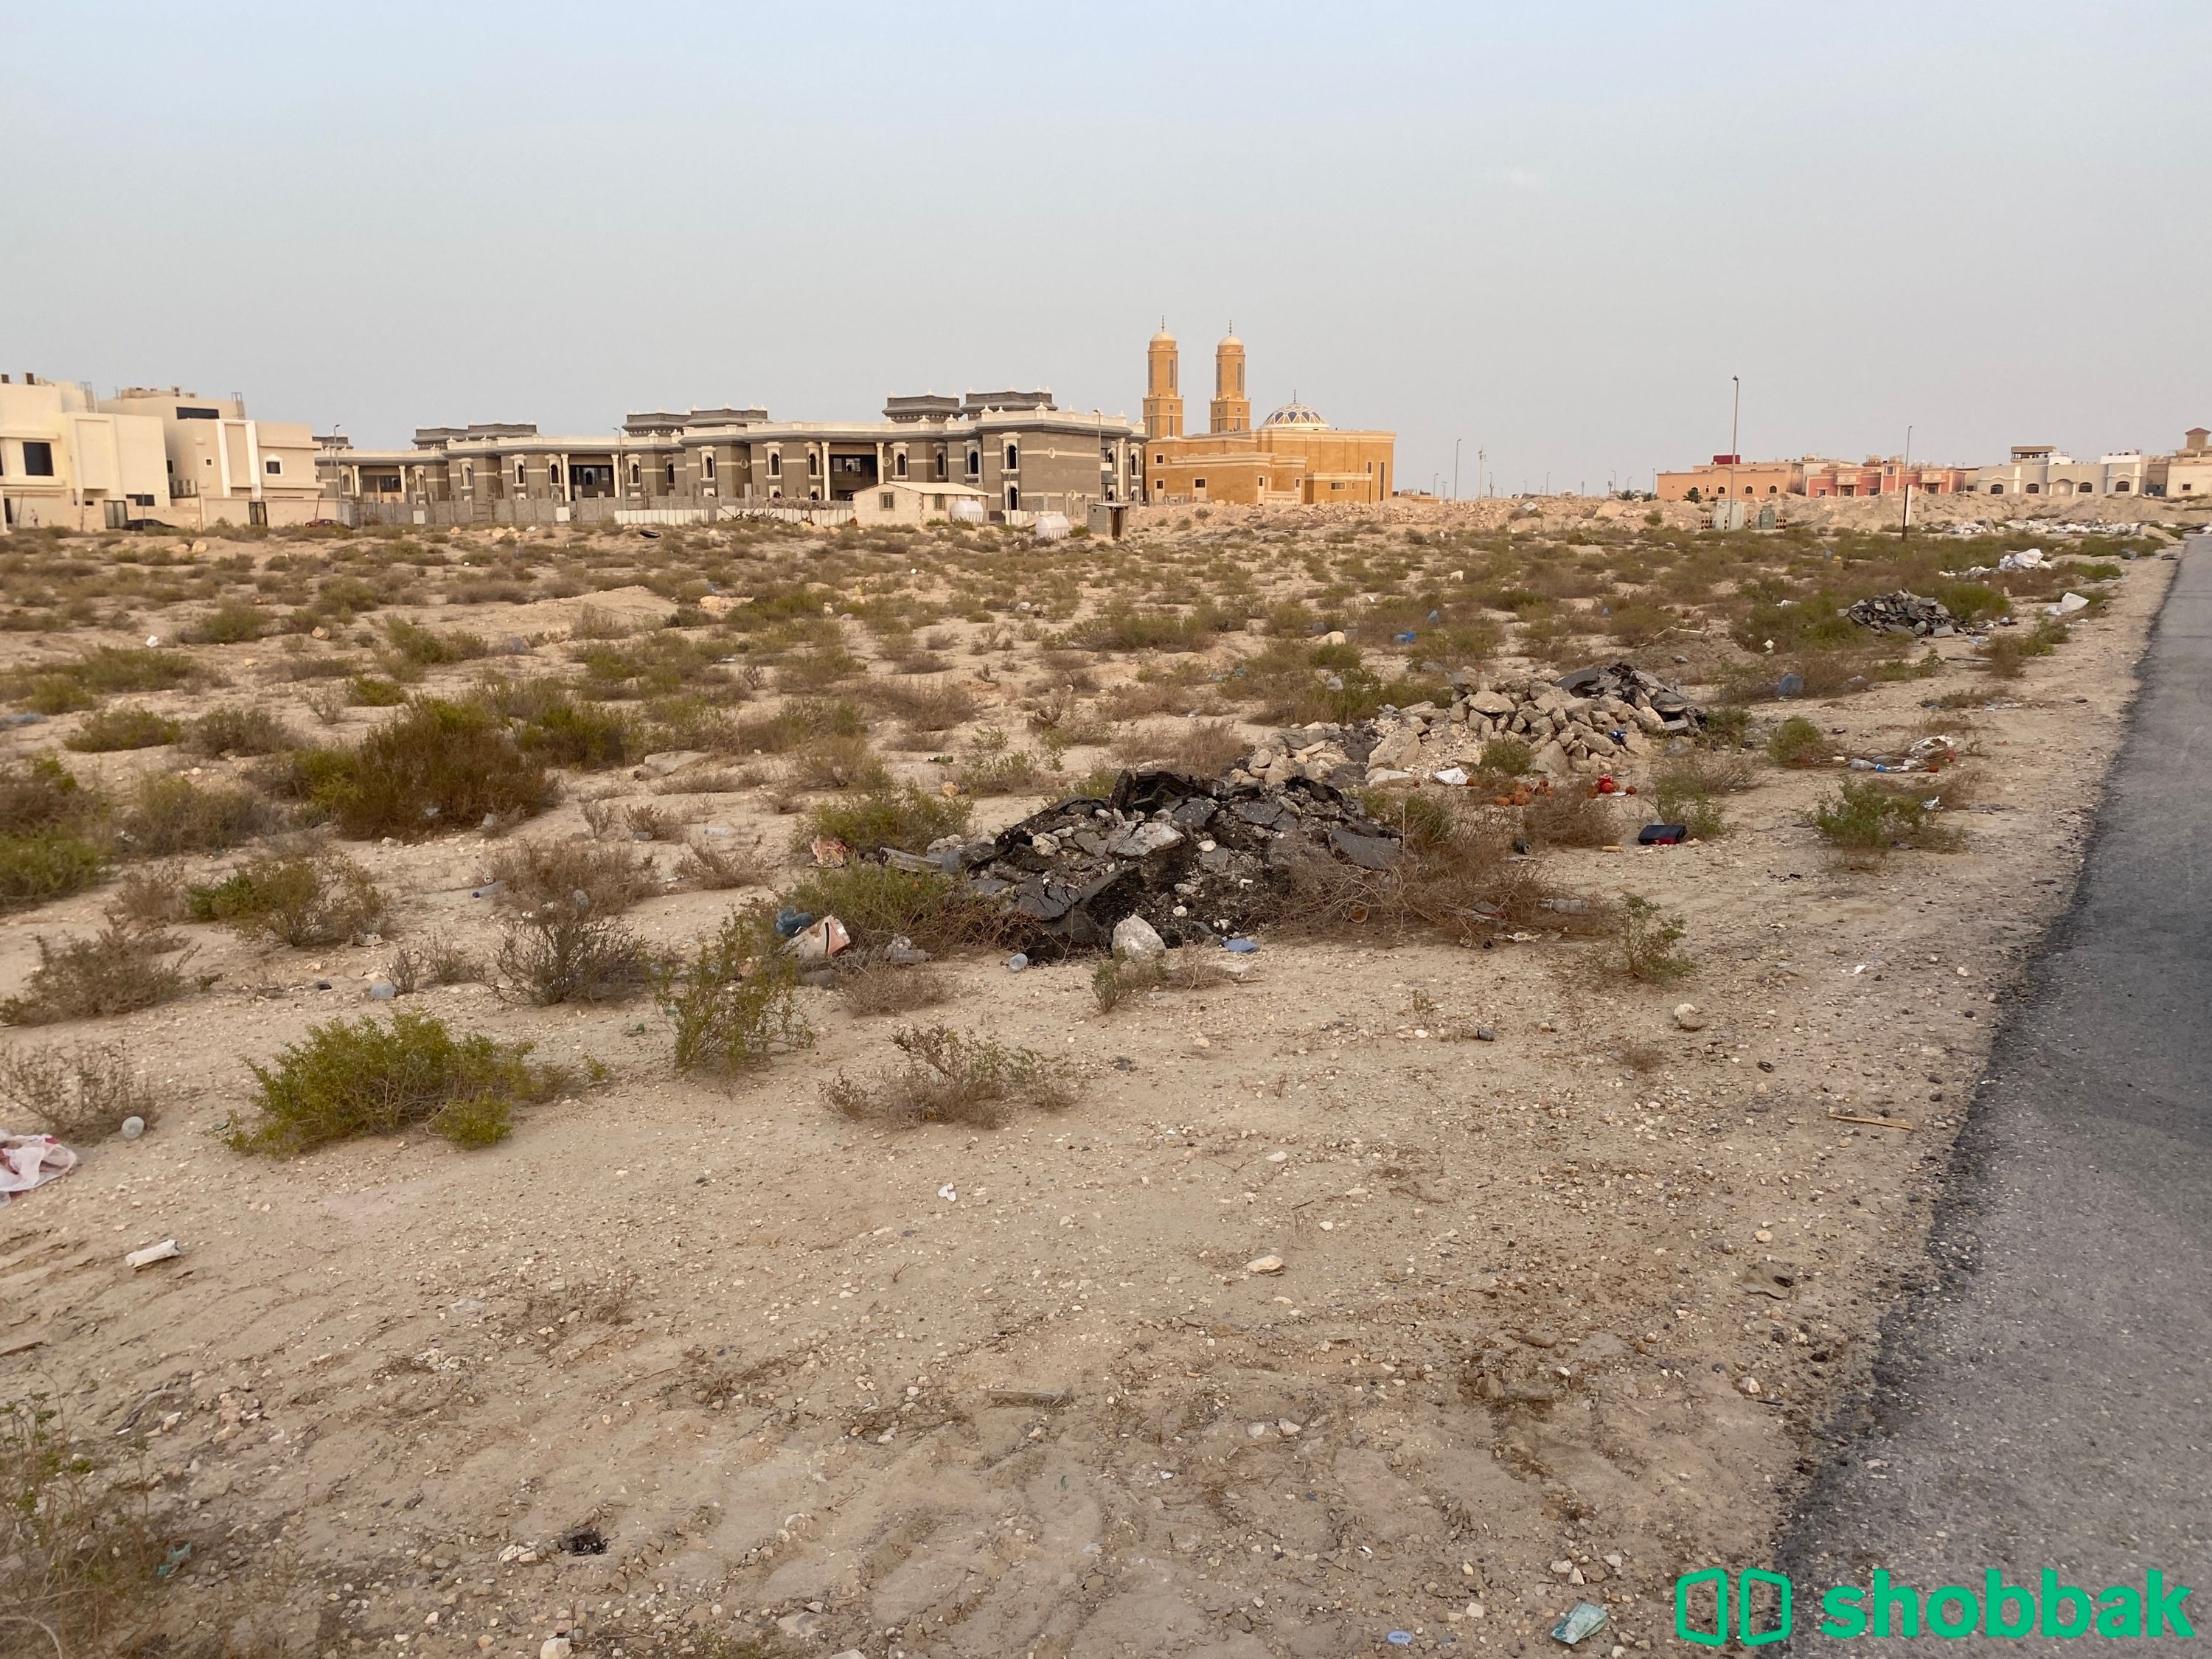 أرض للبيع شارع جودة حي الفيصلية ، الدمام  شباك السعودية